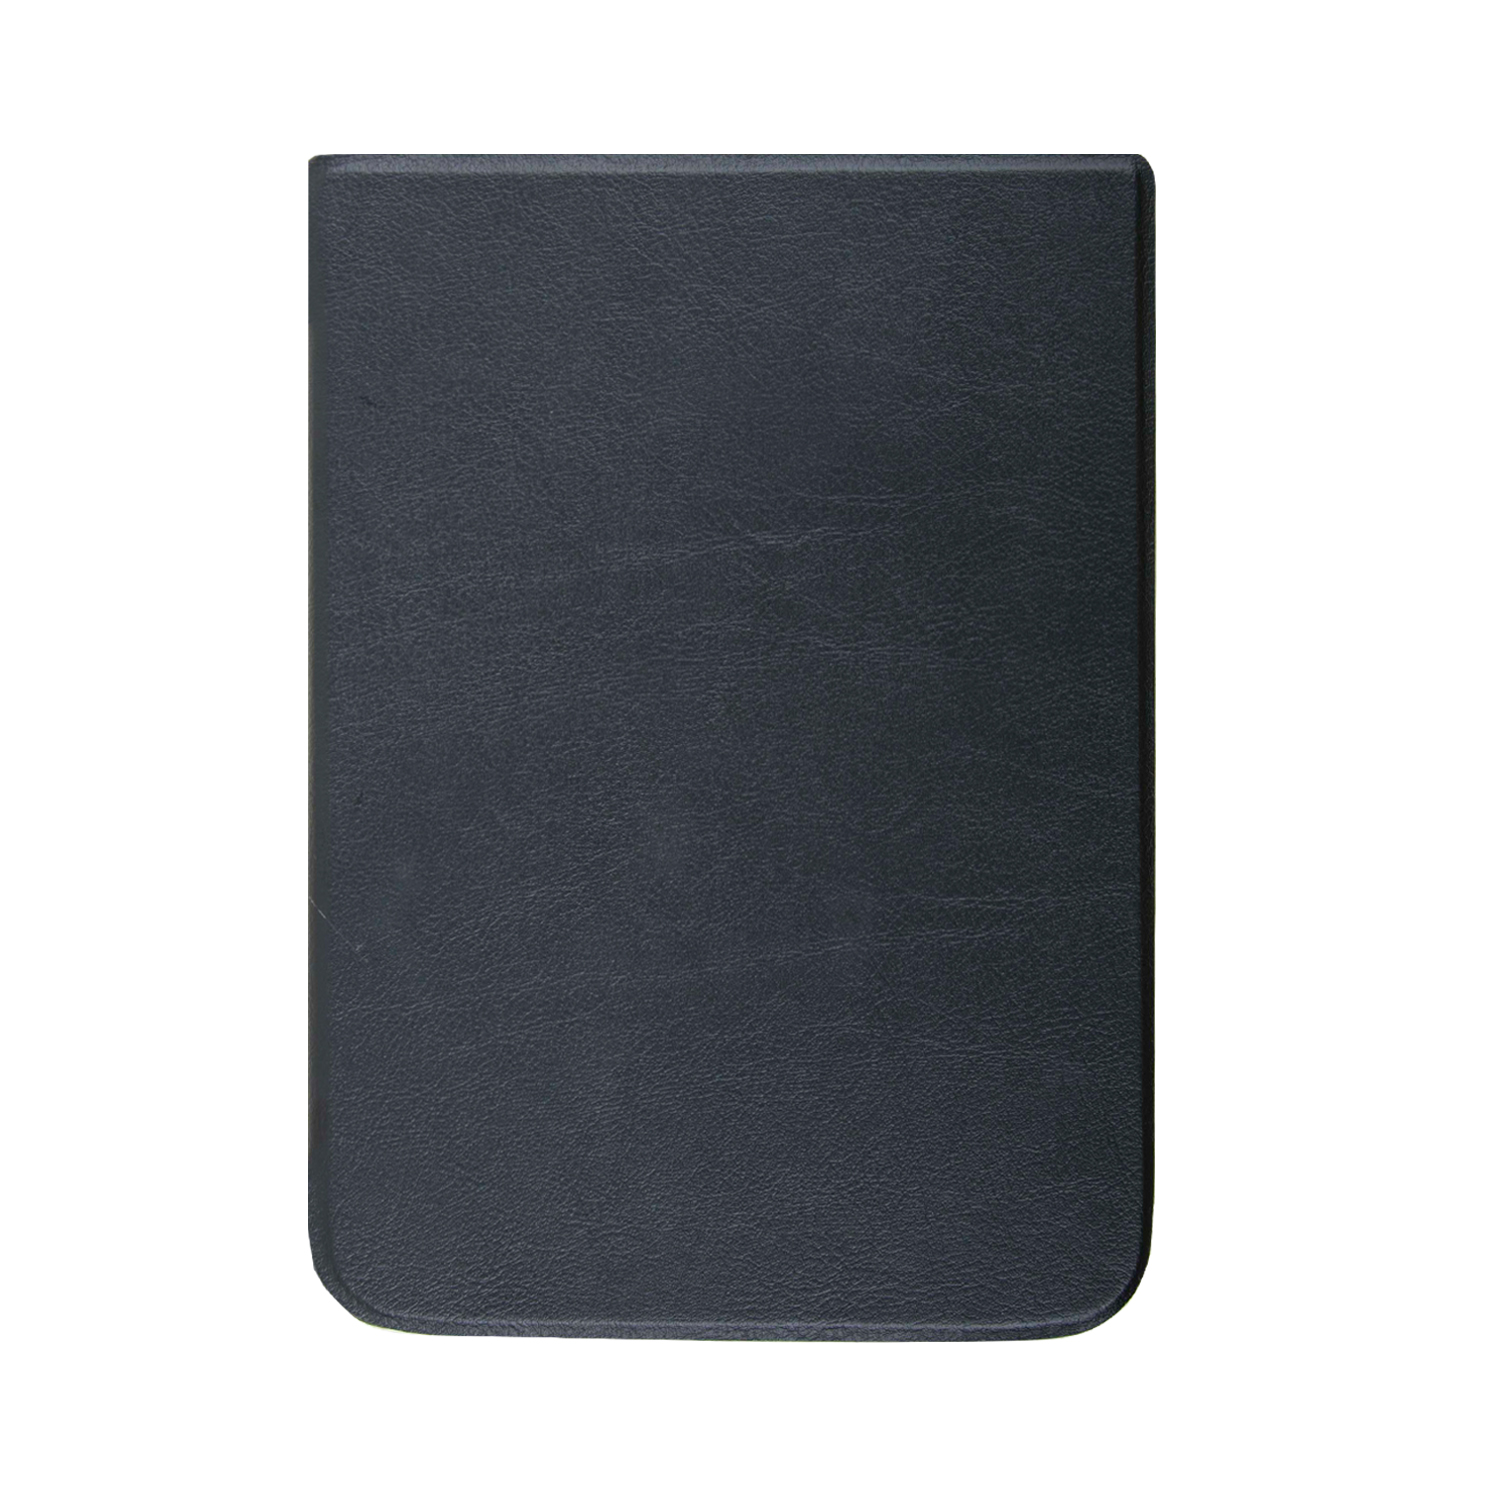 Pouzdro pro PocketBook 740 InkPad 3 černé